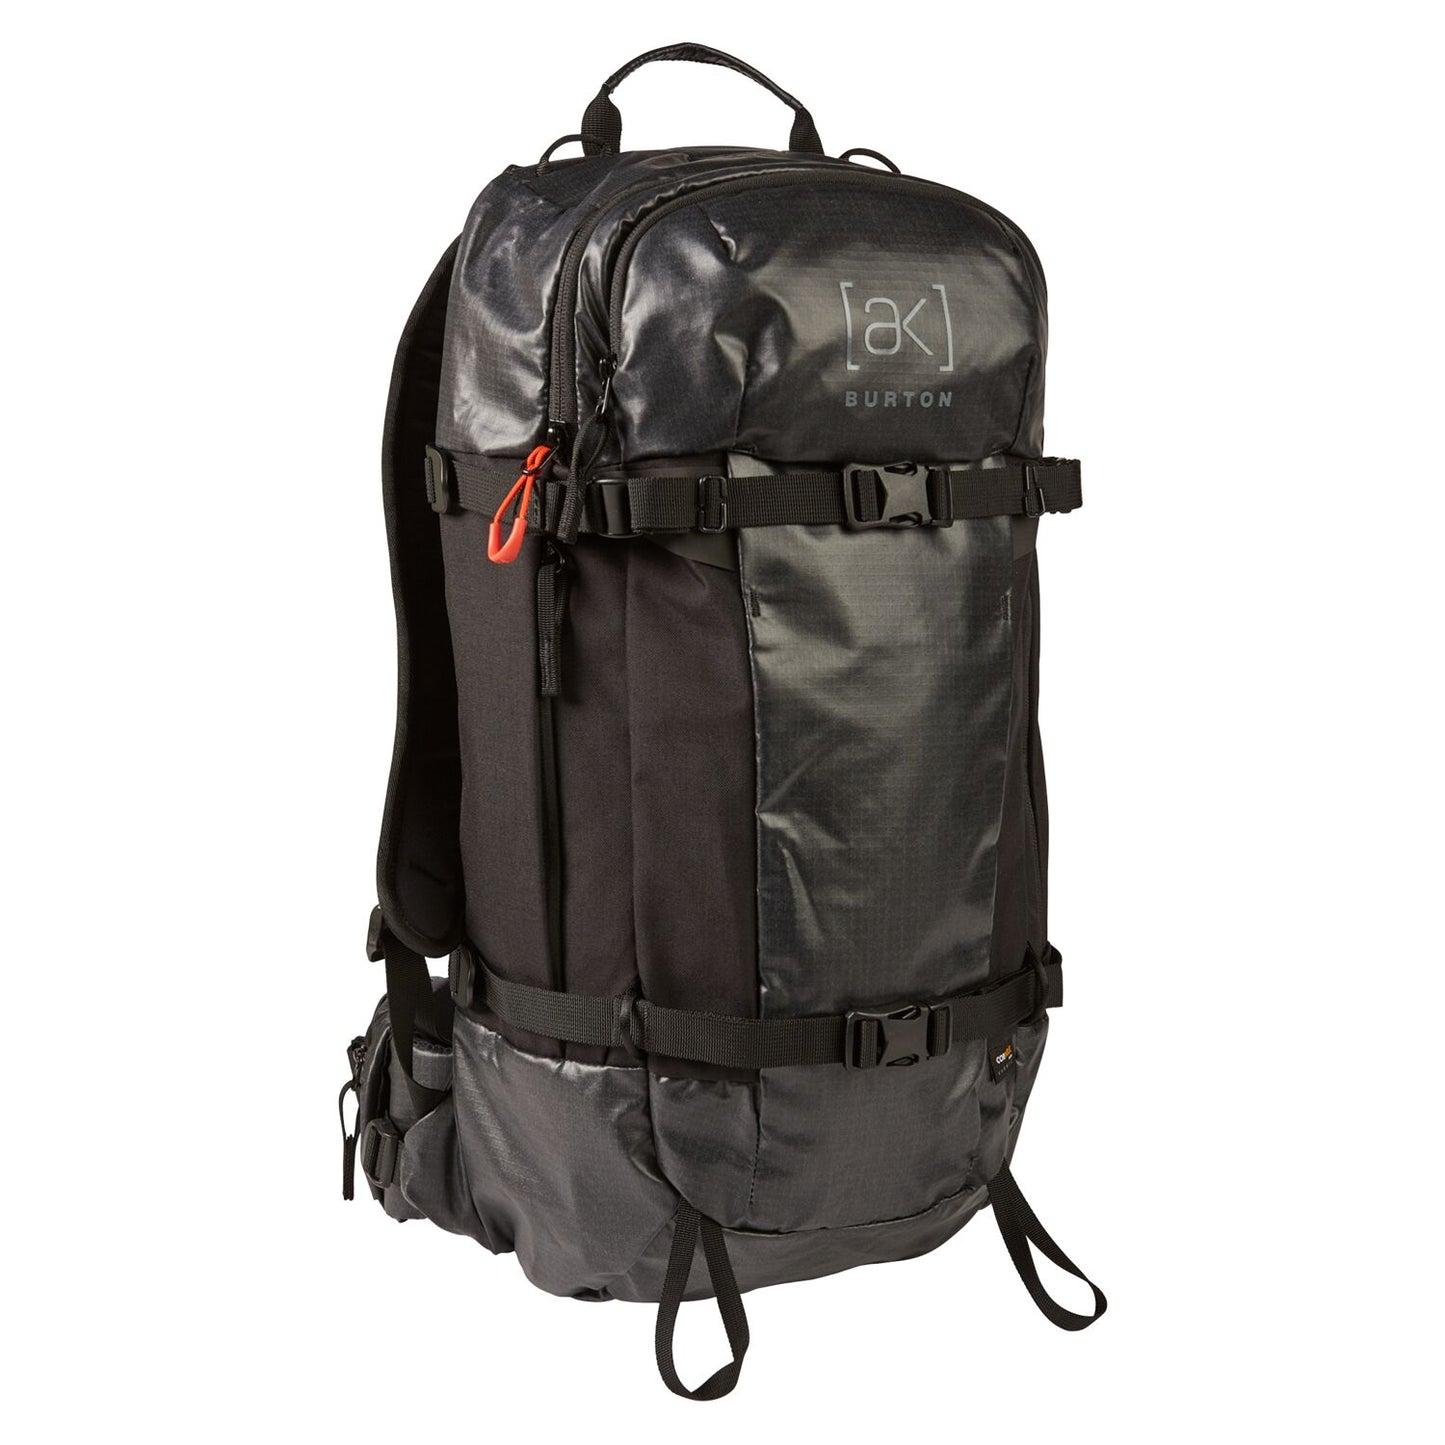 Burton [ak] Dispatcher 25L Backpack